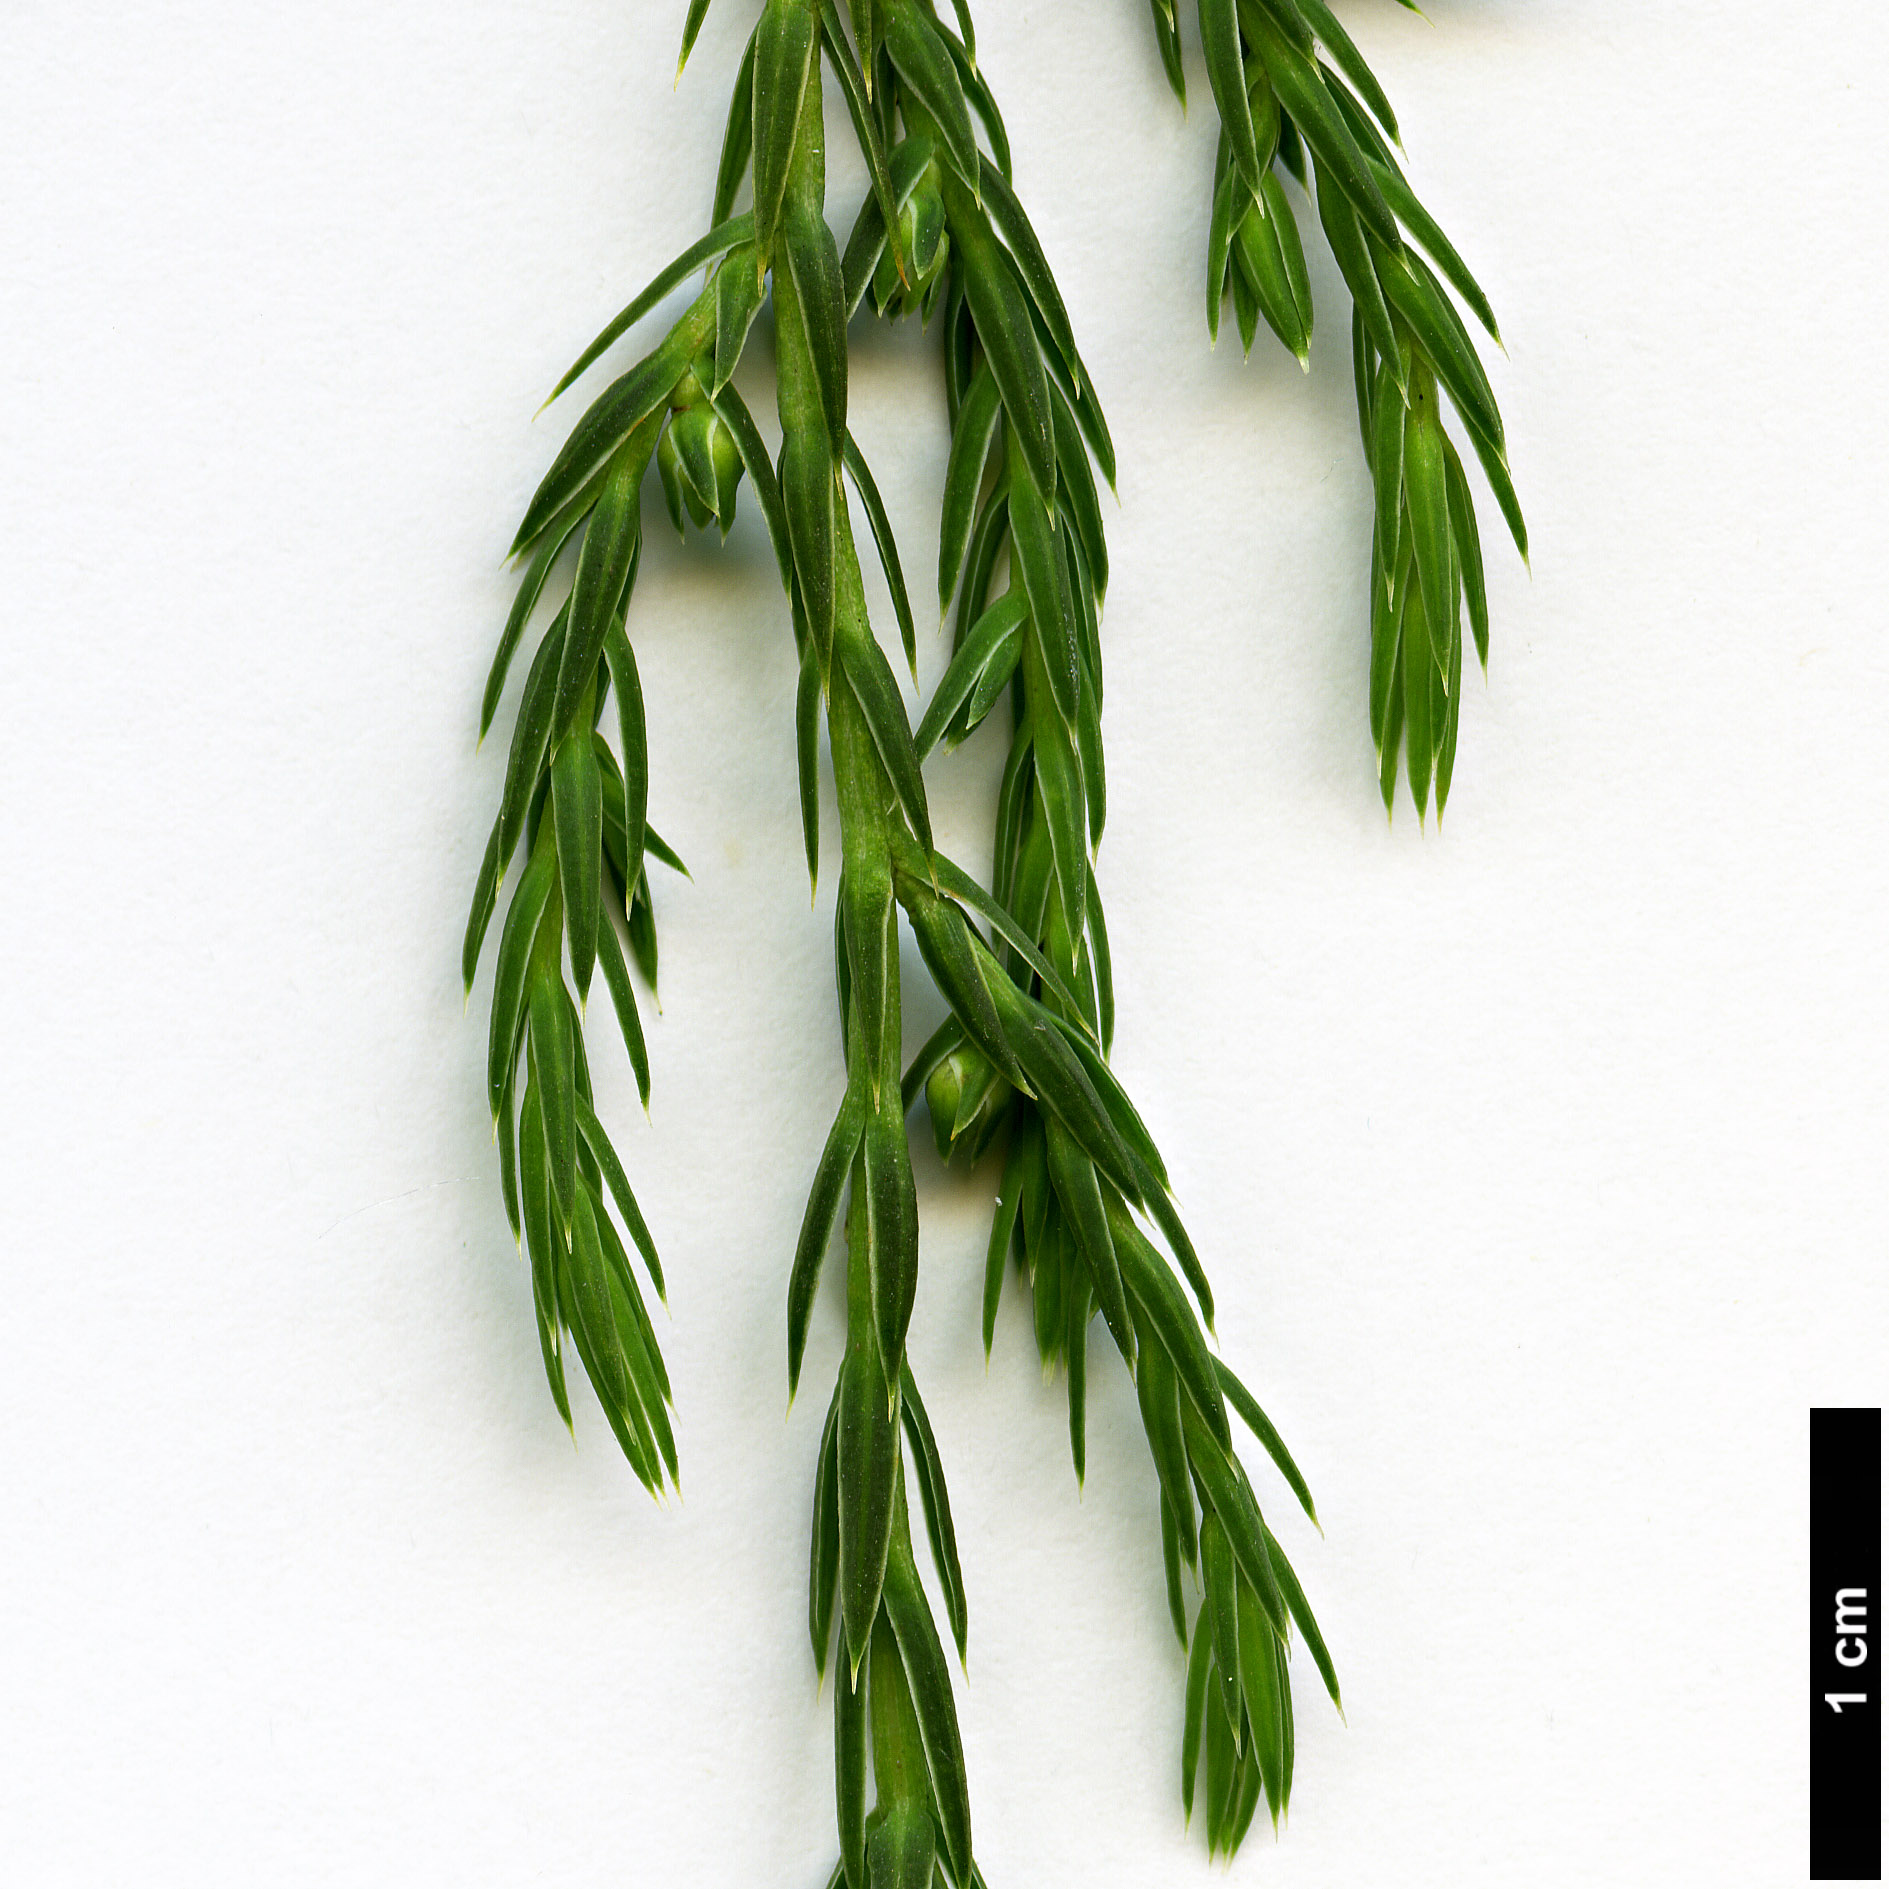 High resolution image: Family: Cupressaceae - Genus: Juniperus - Taxon: recurva - SpeciesSub: var. coxii